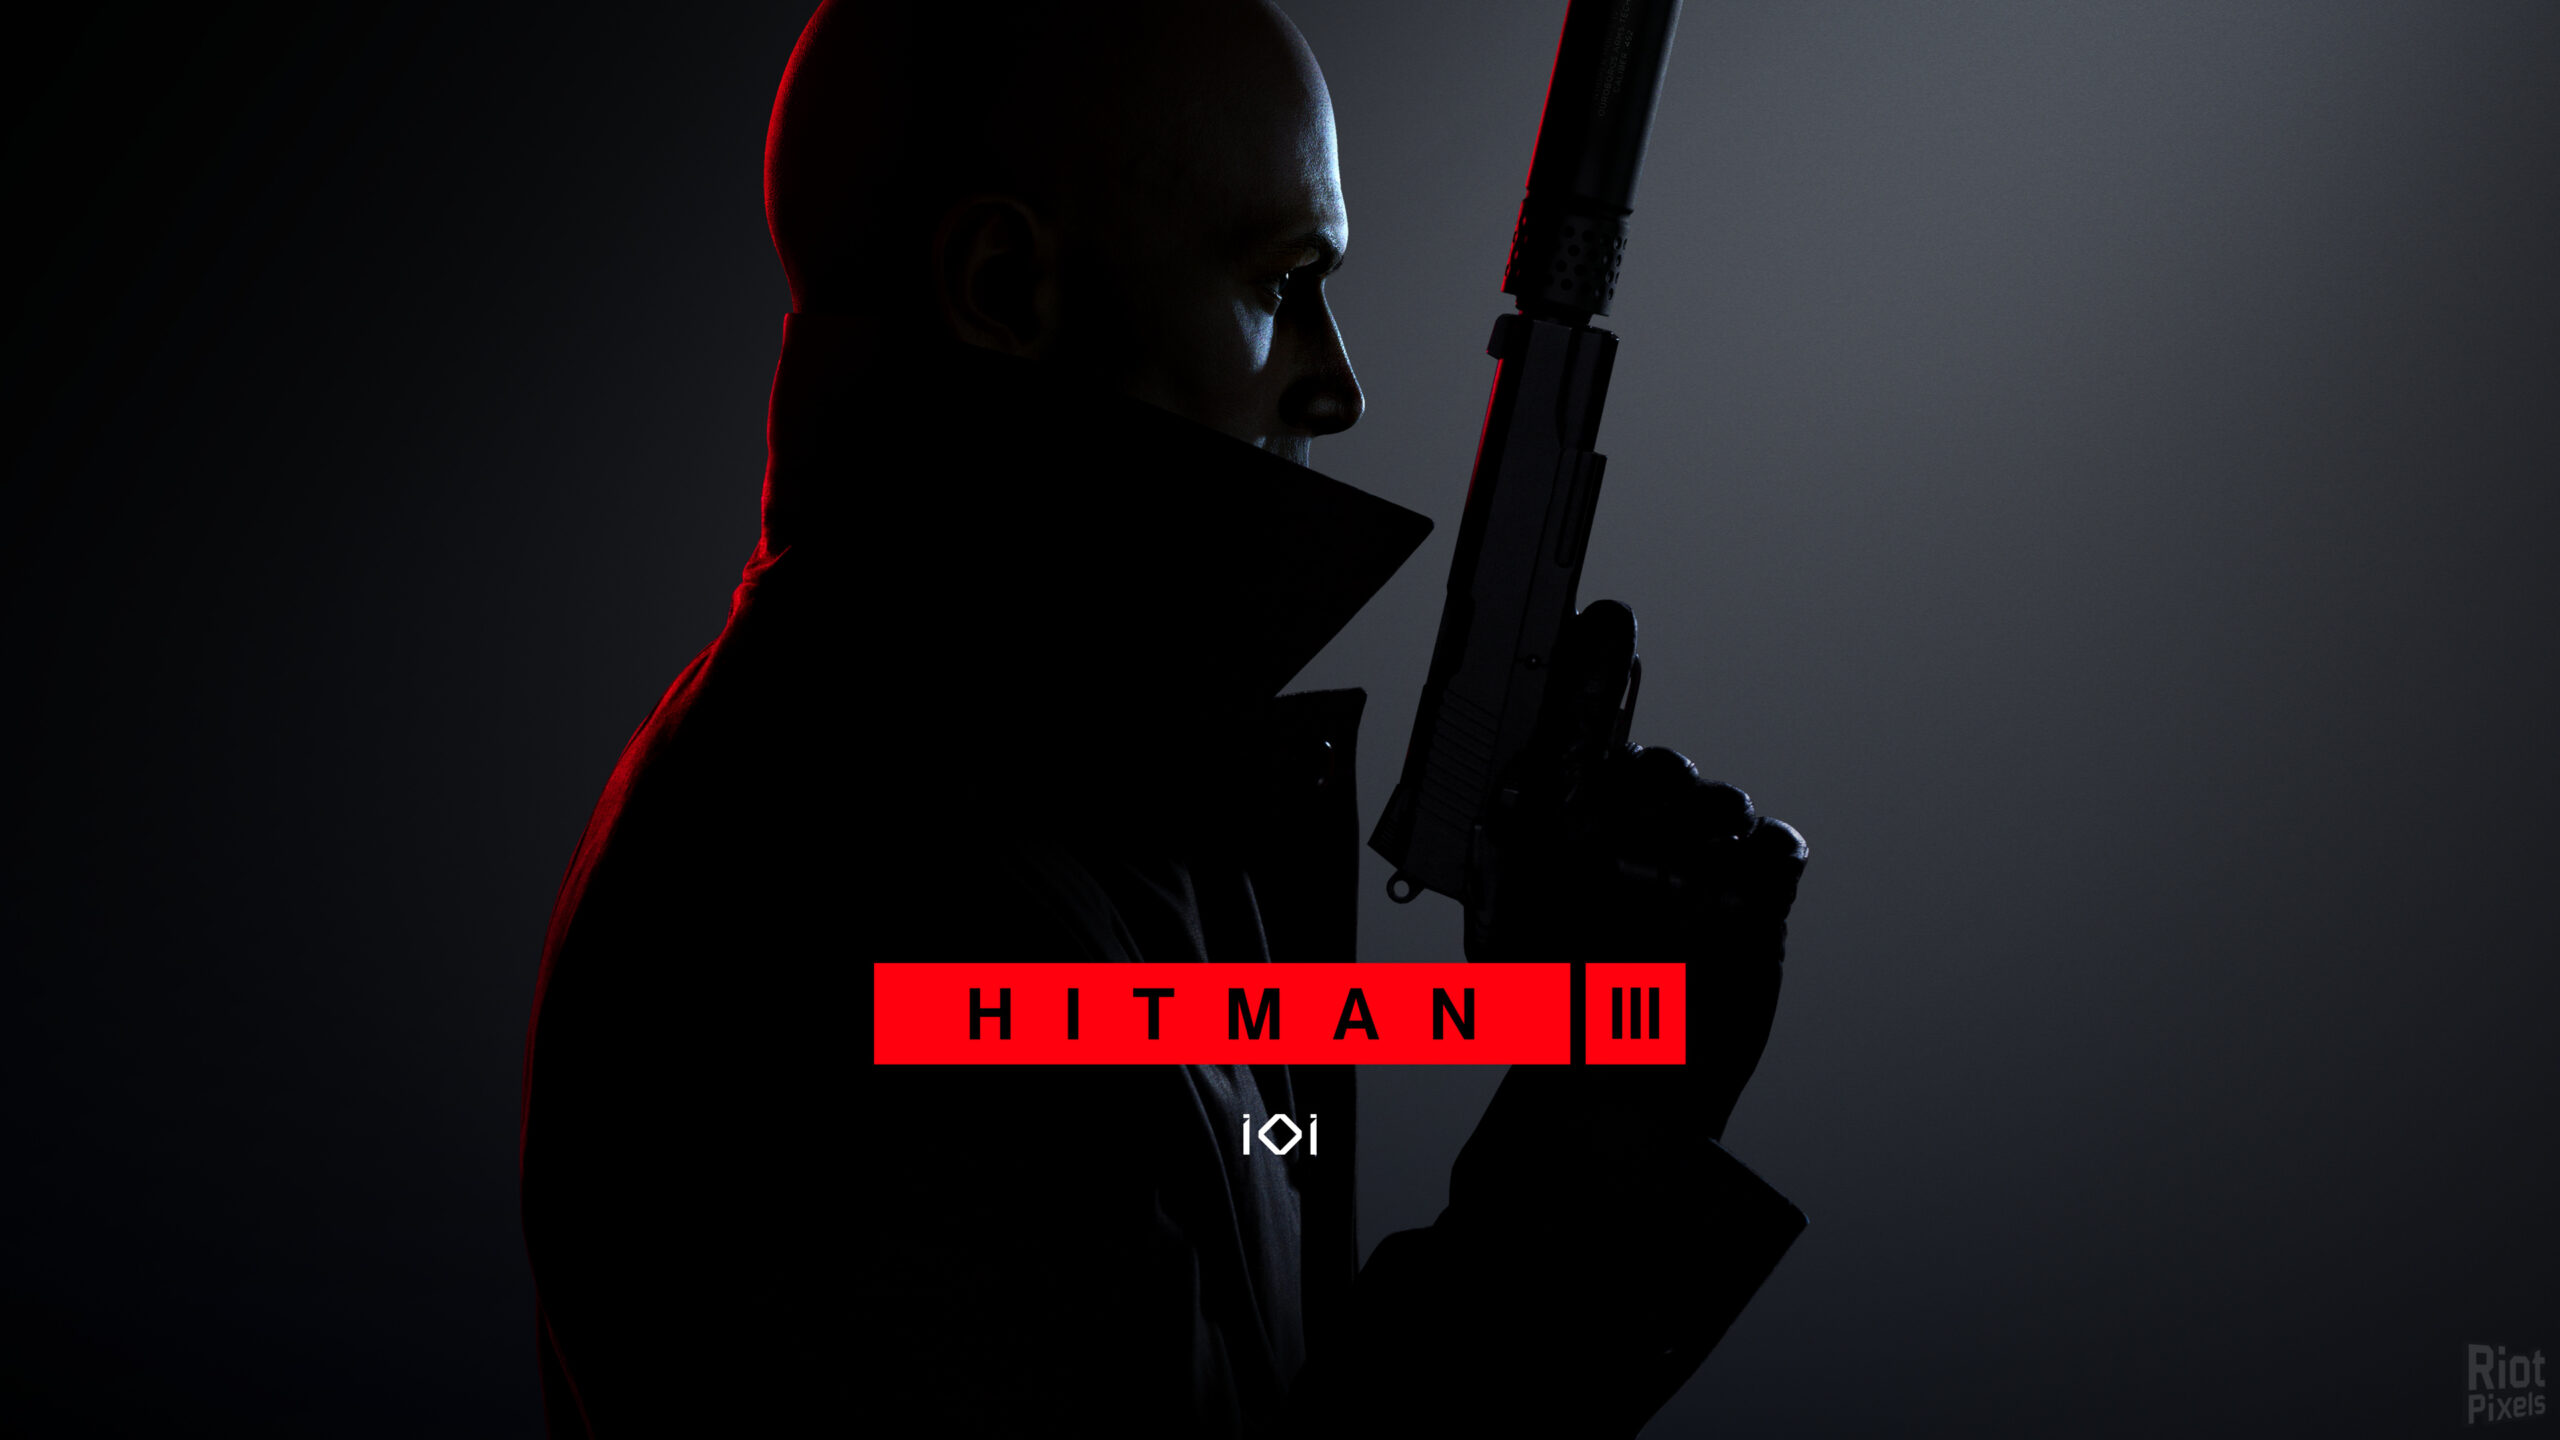 Hitman III выйдет 20 января для PC (EGS), PS4 , PS5, Xbox One, Xbox Series X и Stadia